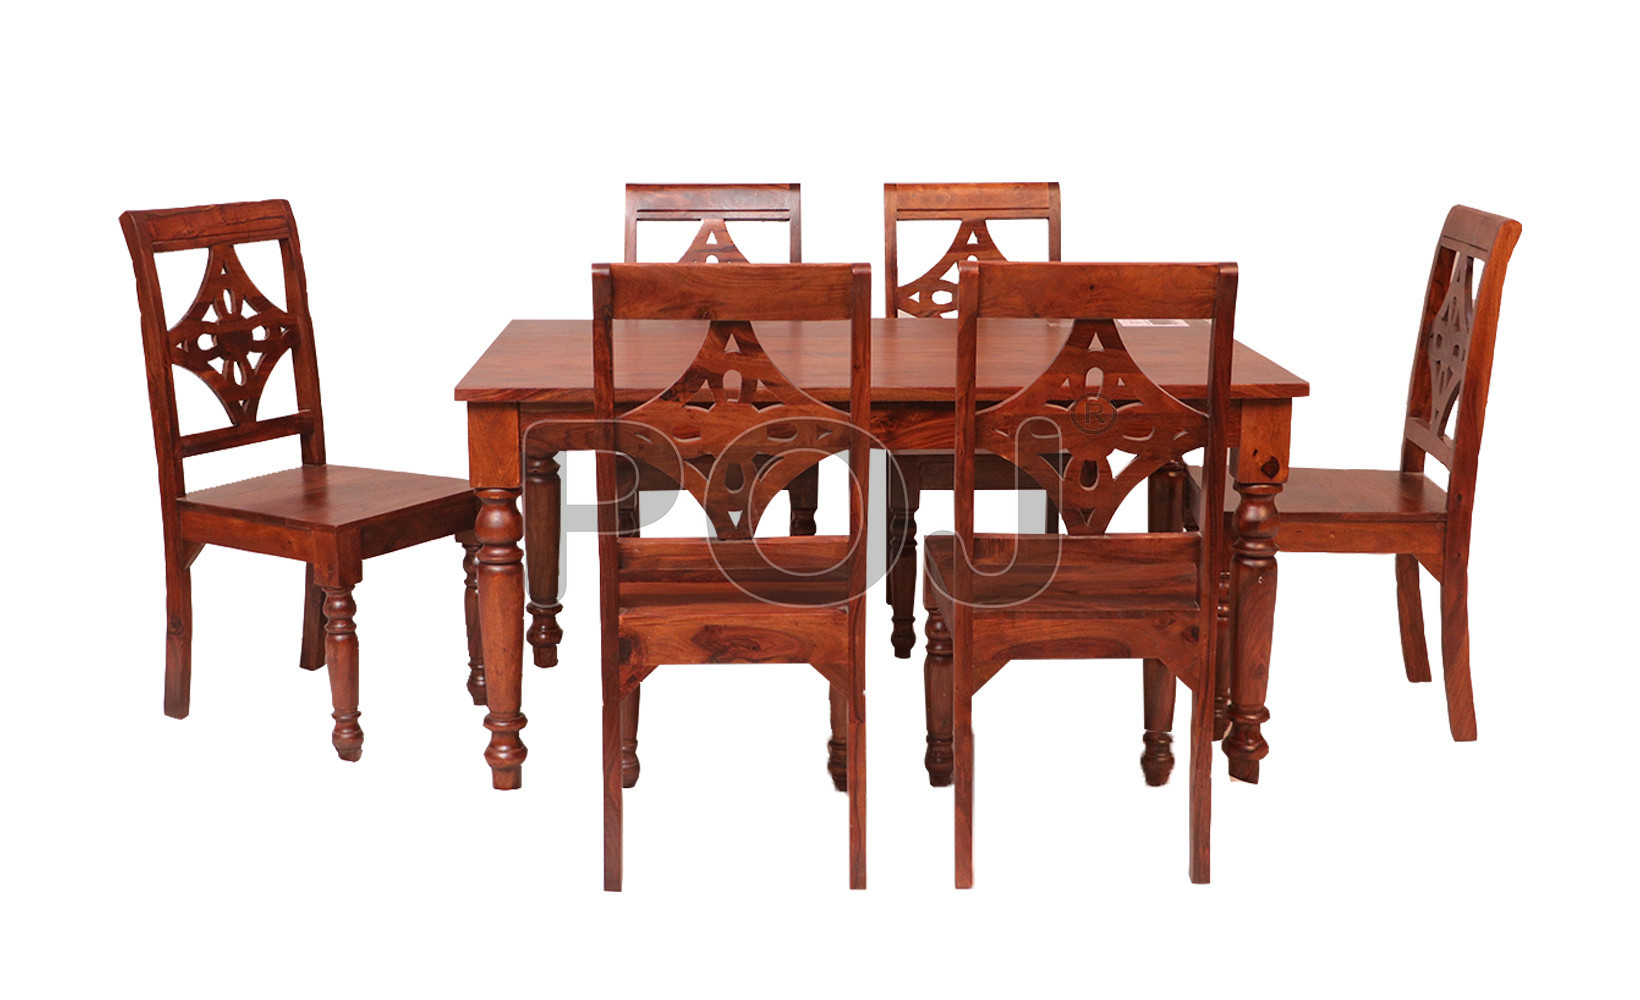 Sheesham Wood Dining Table Set